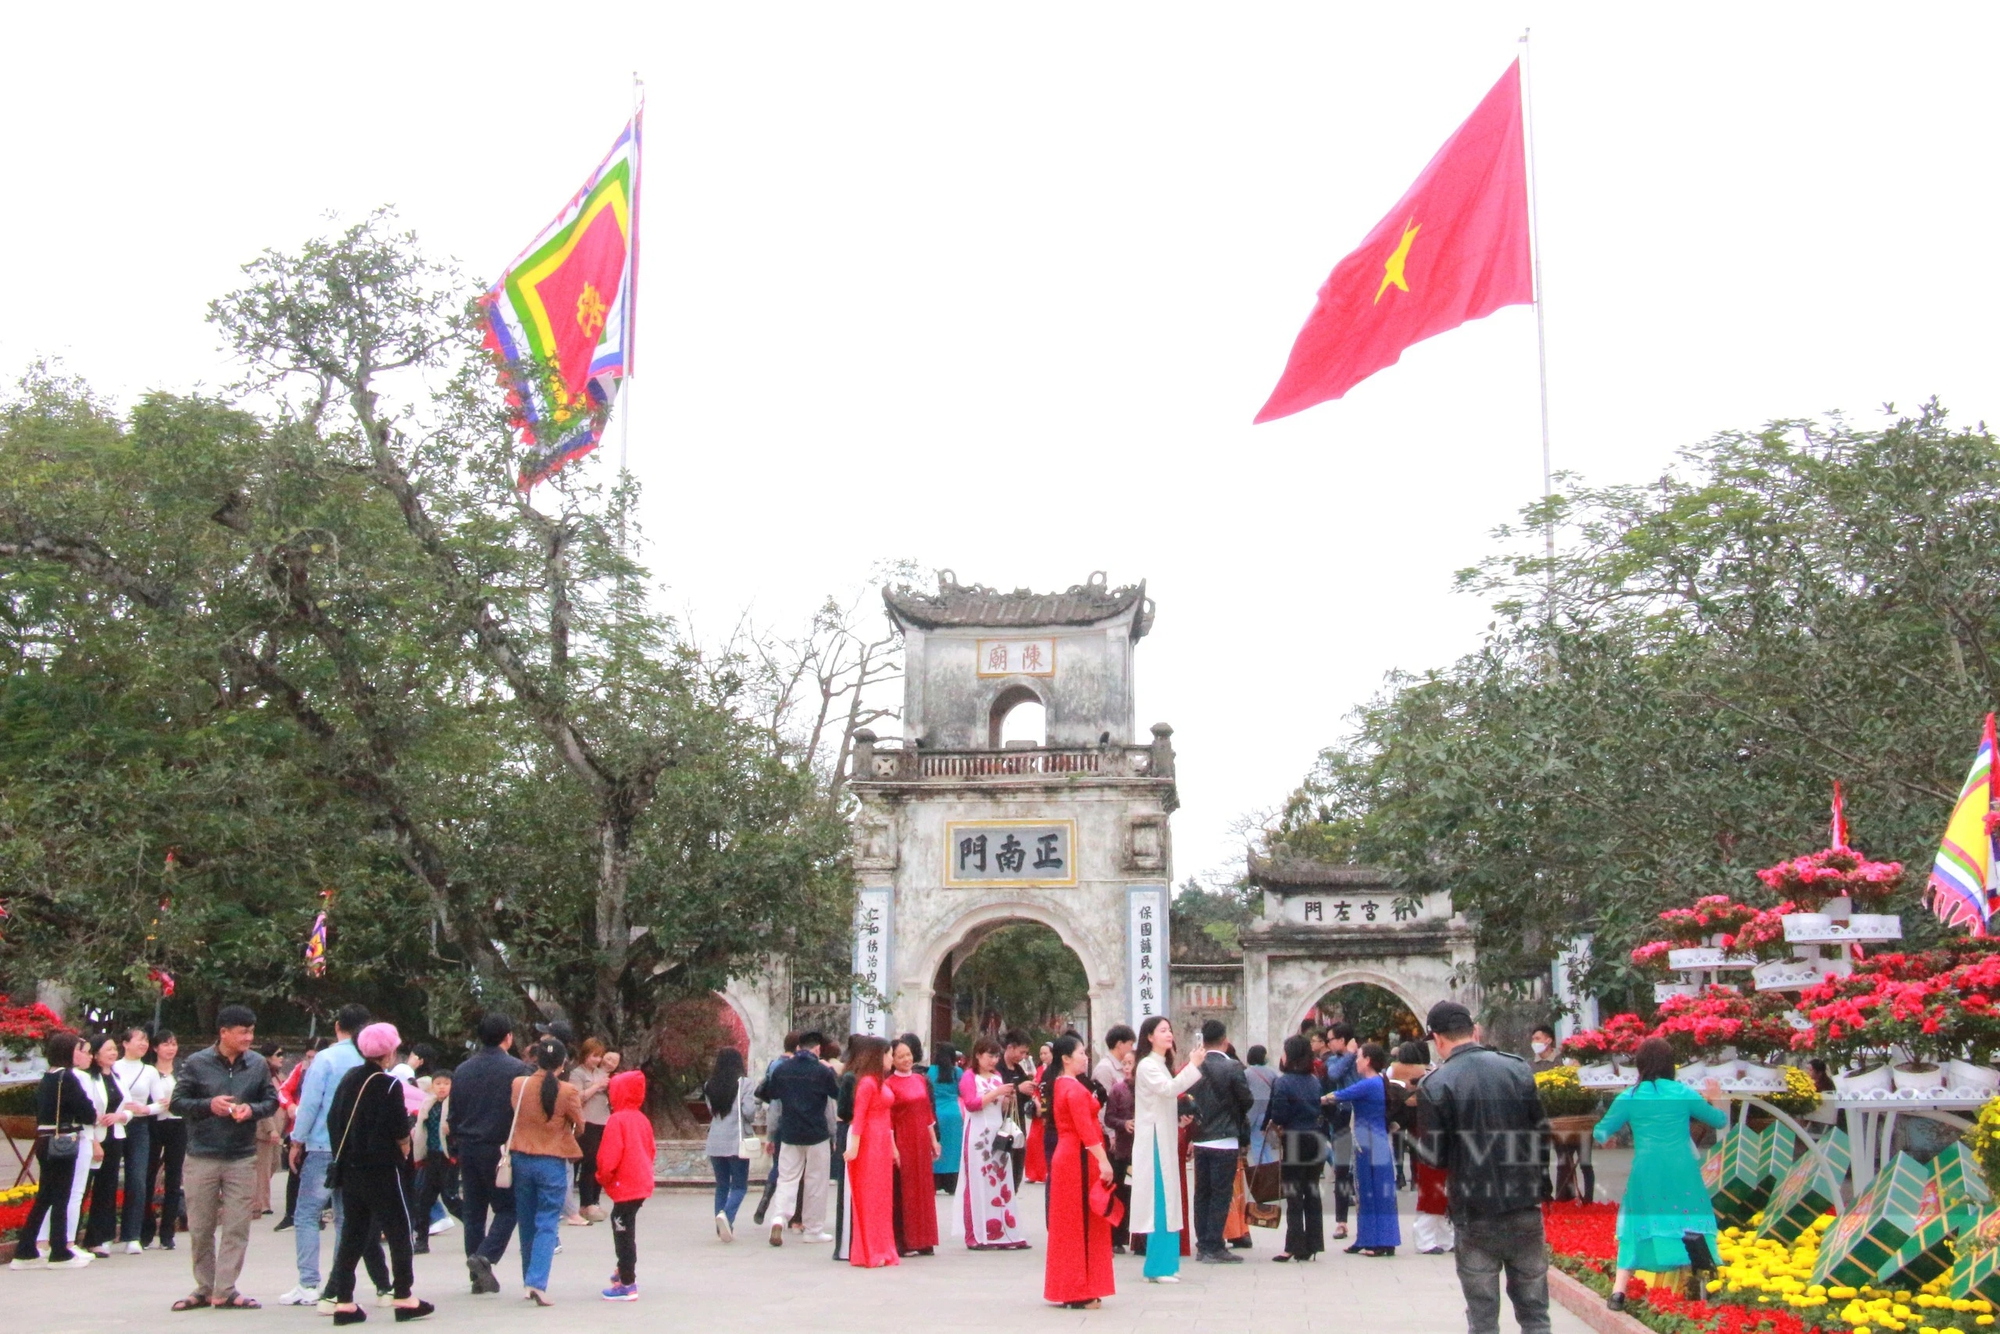 Hàng vạn người thập phương nườm nượp đổ về Đền Trần ở Nam Định dù chưa đến ngày chính lễ- Ảnh 1.